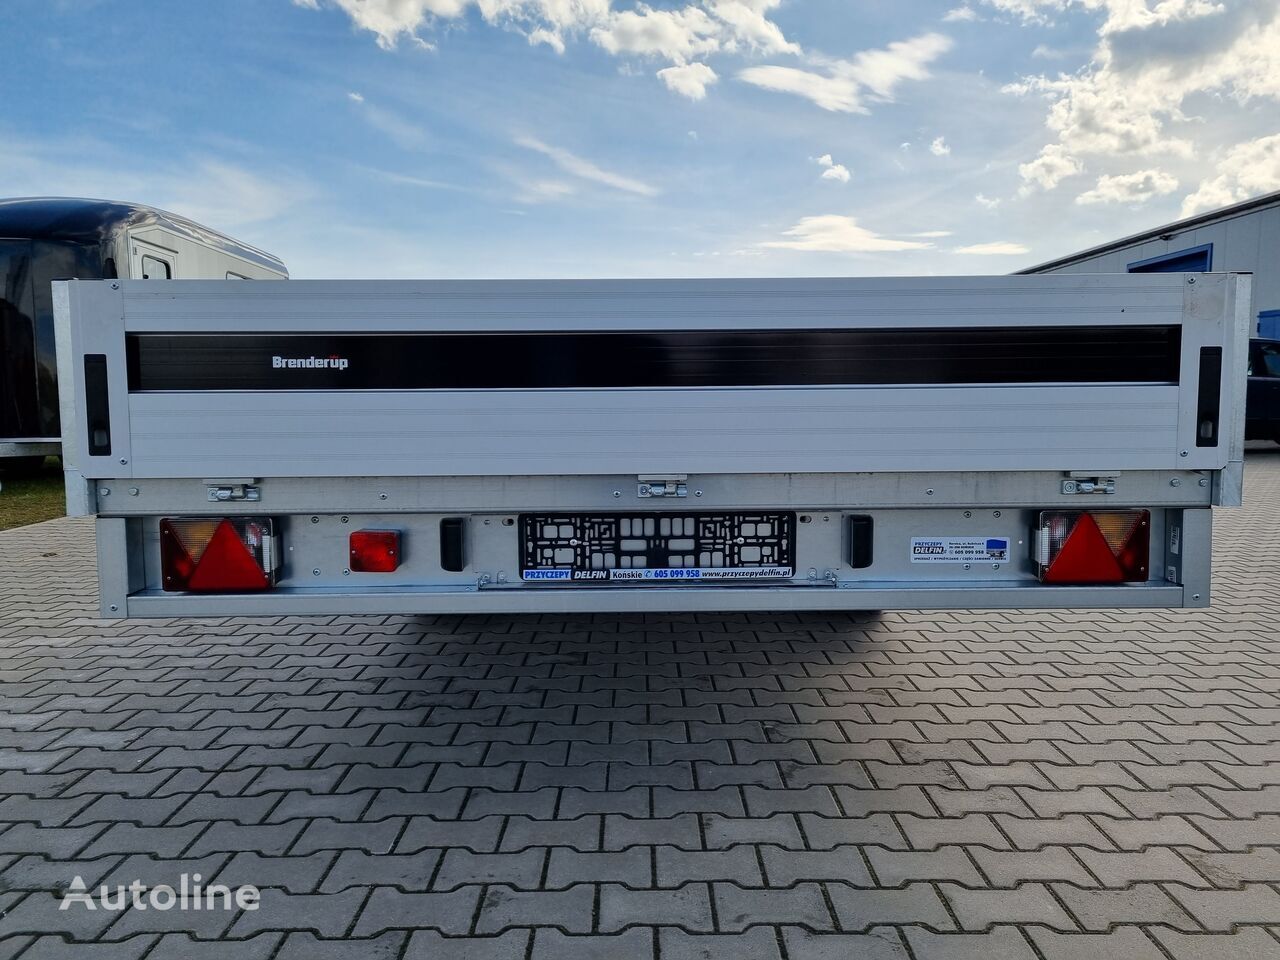 Nieuw Open/ Plateau aanhangwagen Brenderup 5520 WATB 3,5T GVW 517x204 cm 5m long trailer platform: afbeelding 6